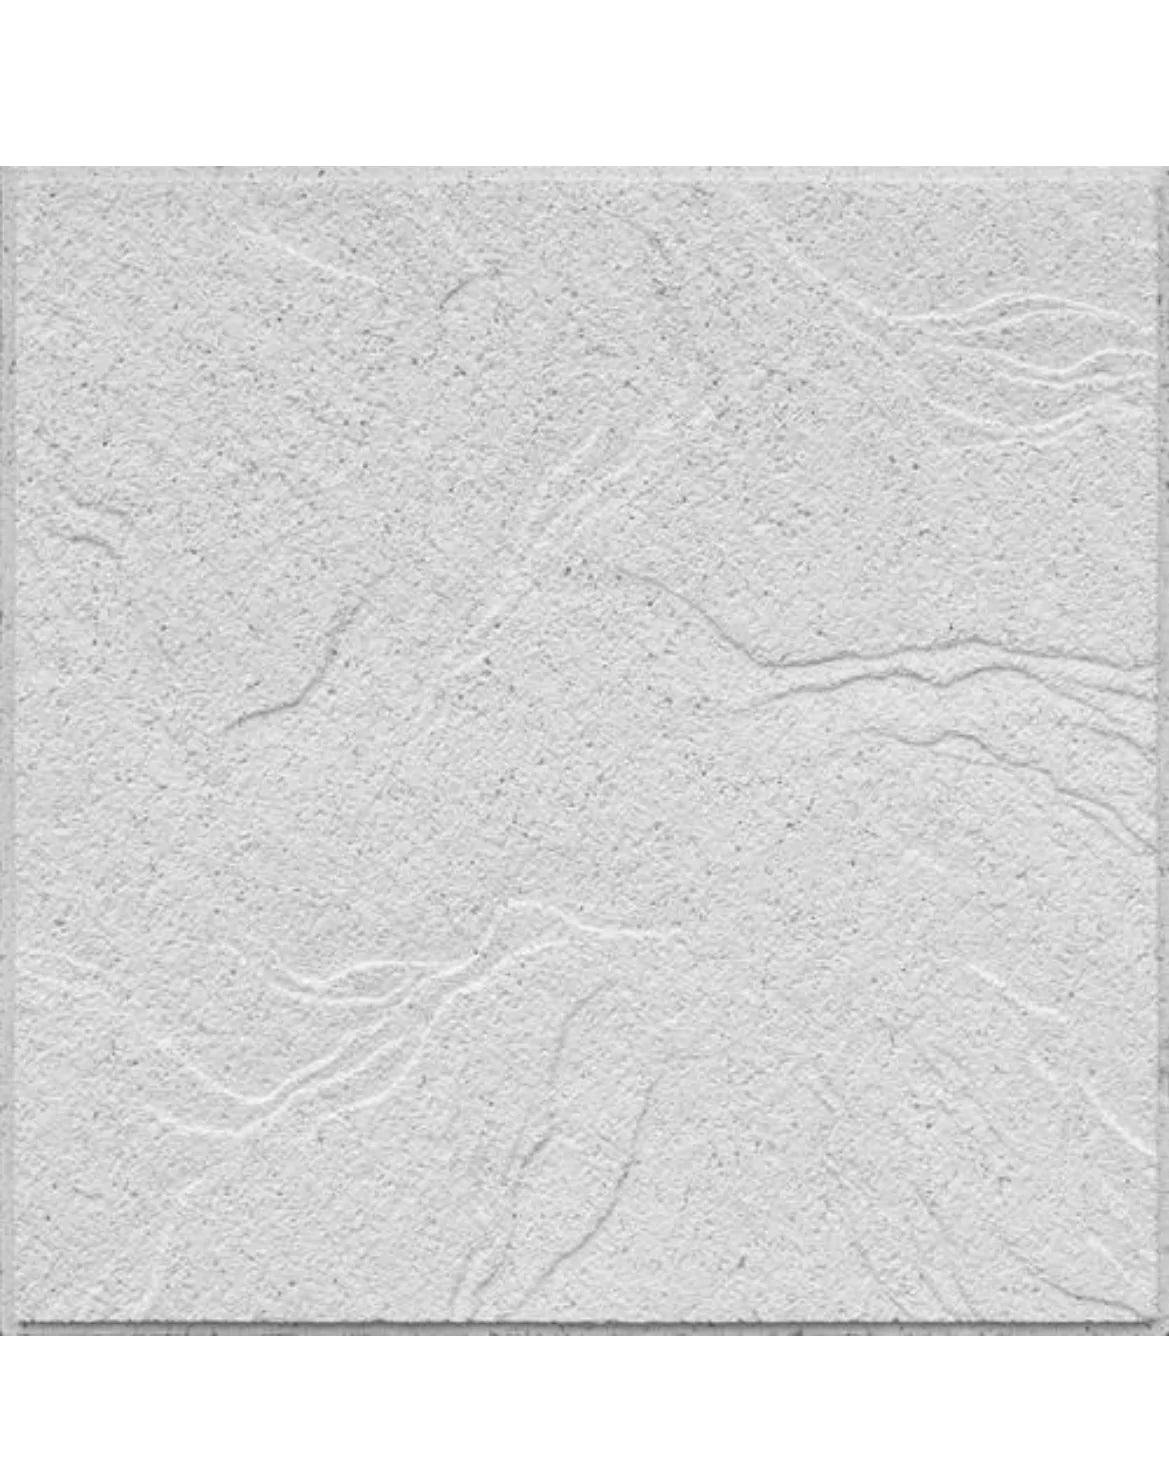 USG™ Sandrift™ Parchment 2' x 2' White Acoustical Drop Ceiling Tile Model Number: R808 Pallet: 256 sqft. / 64 pcs.